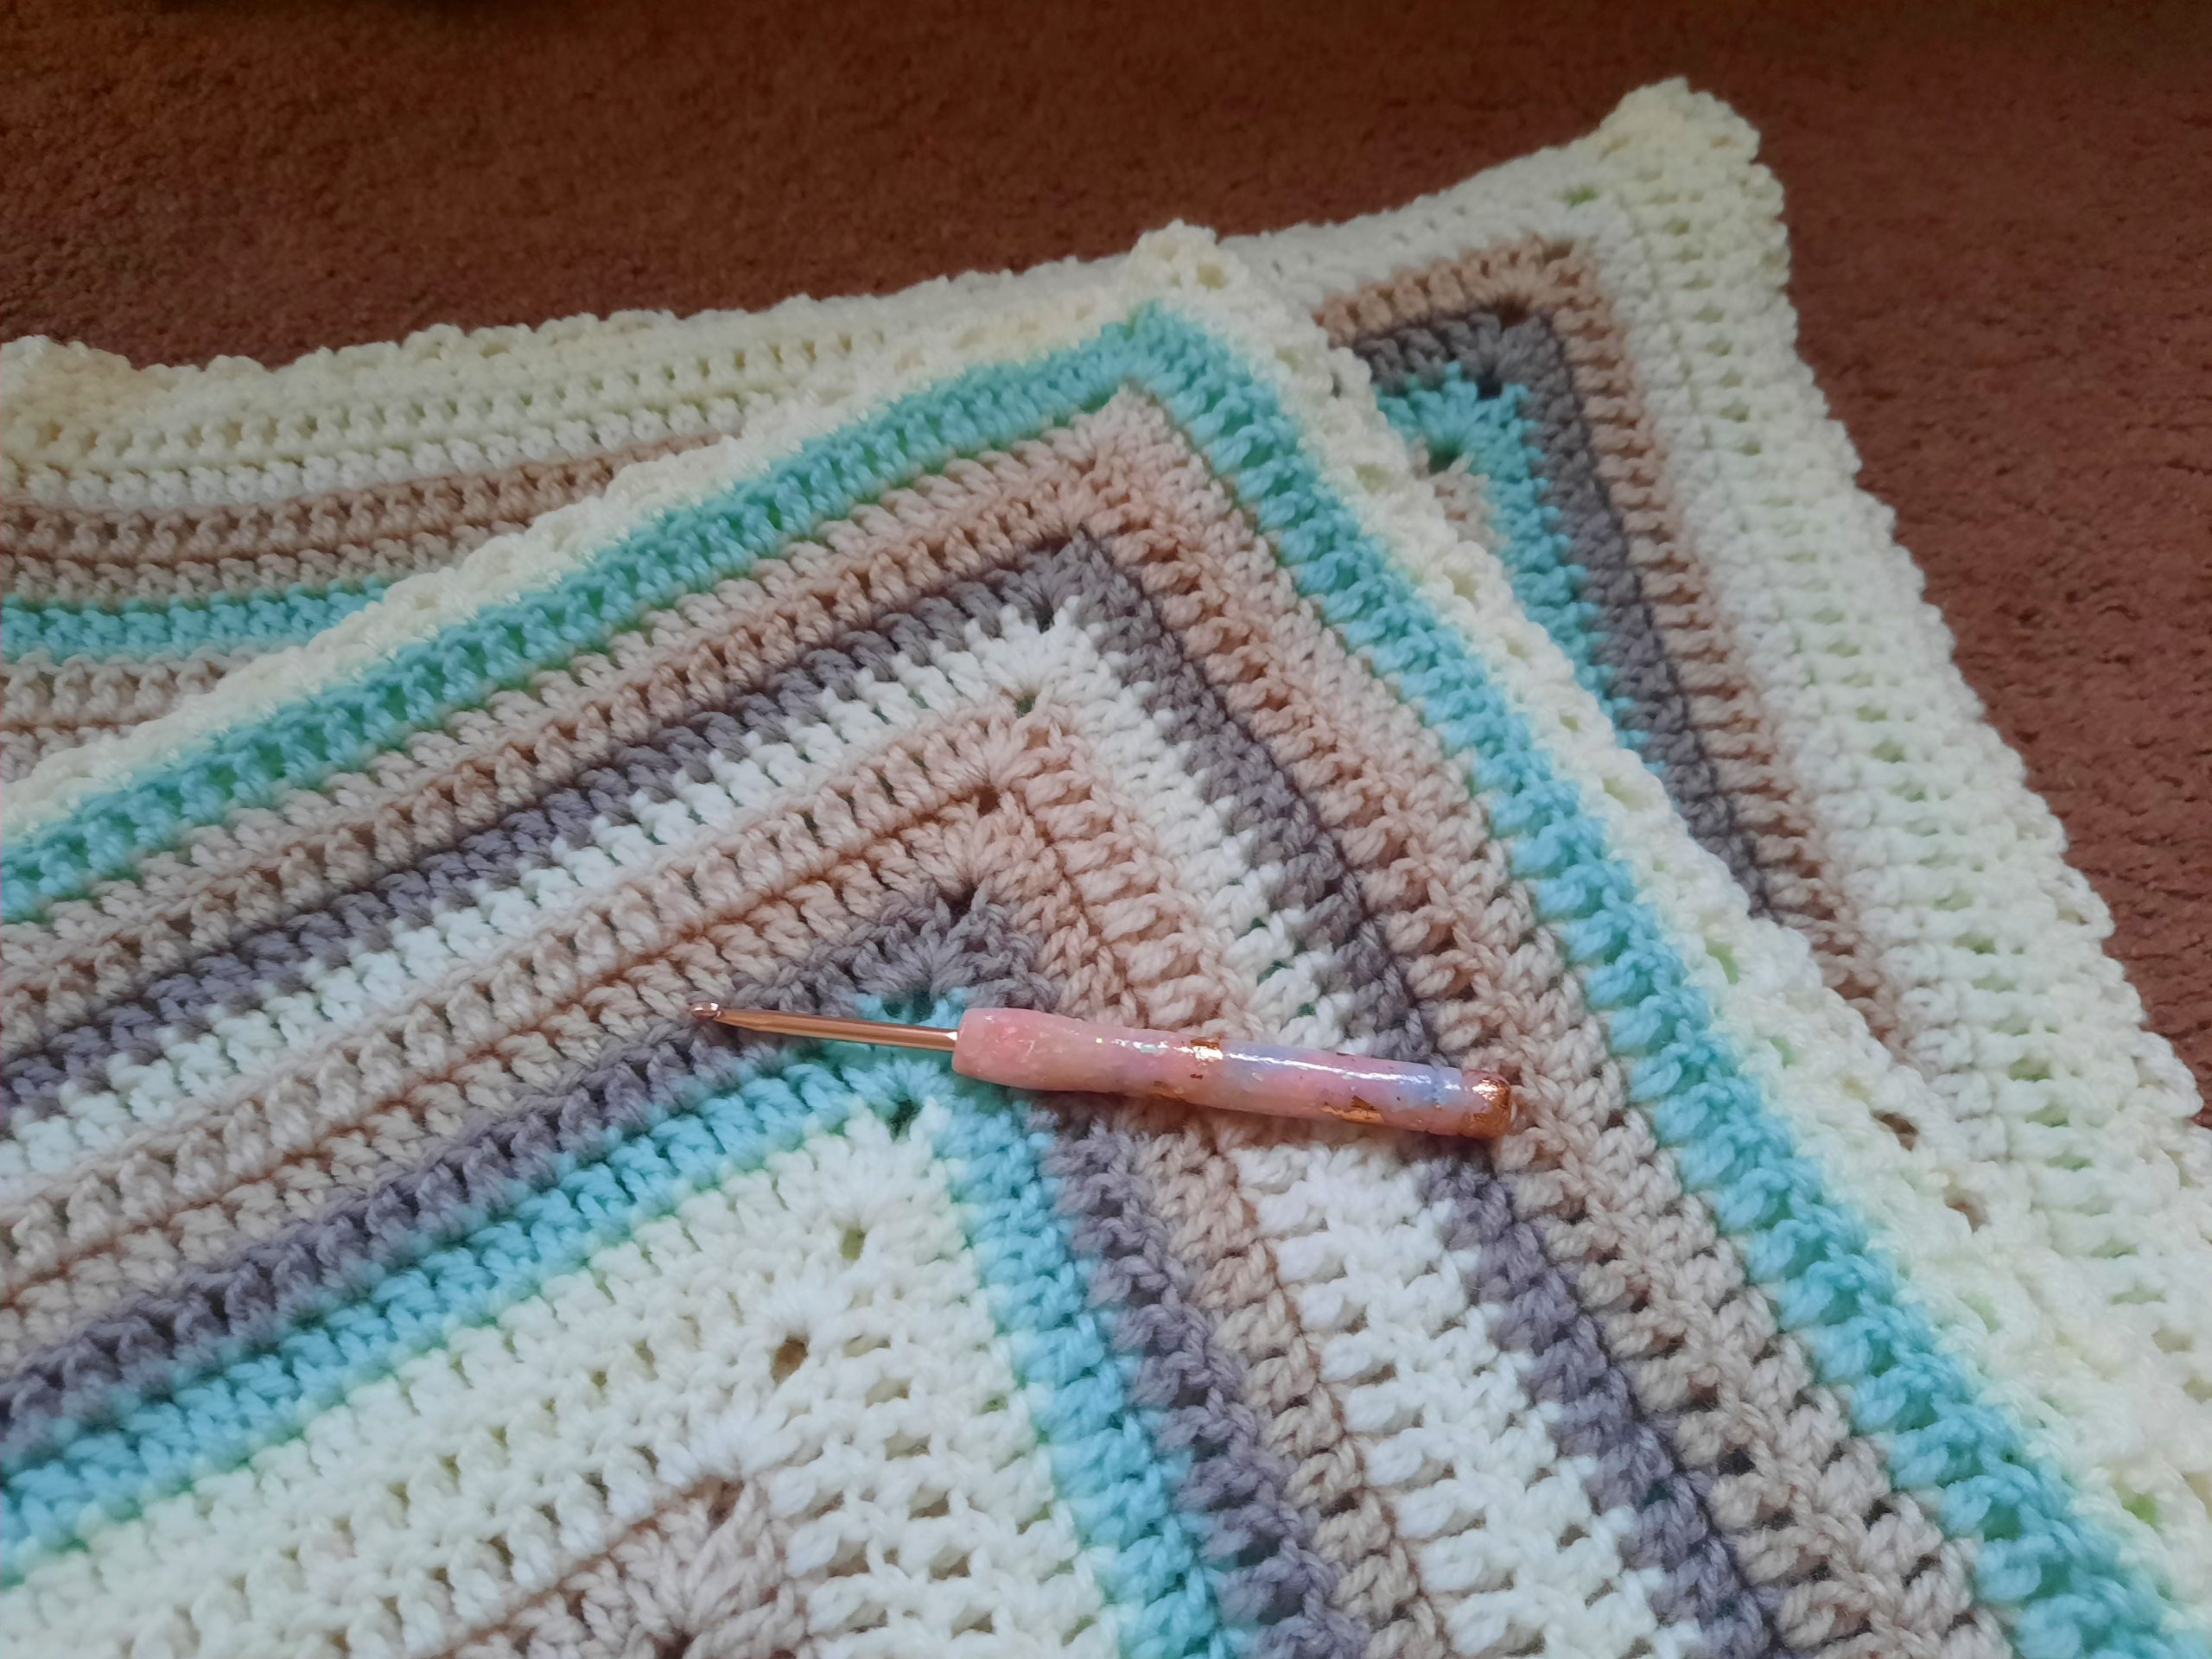 Crochet a baby blanket